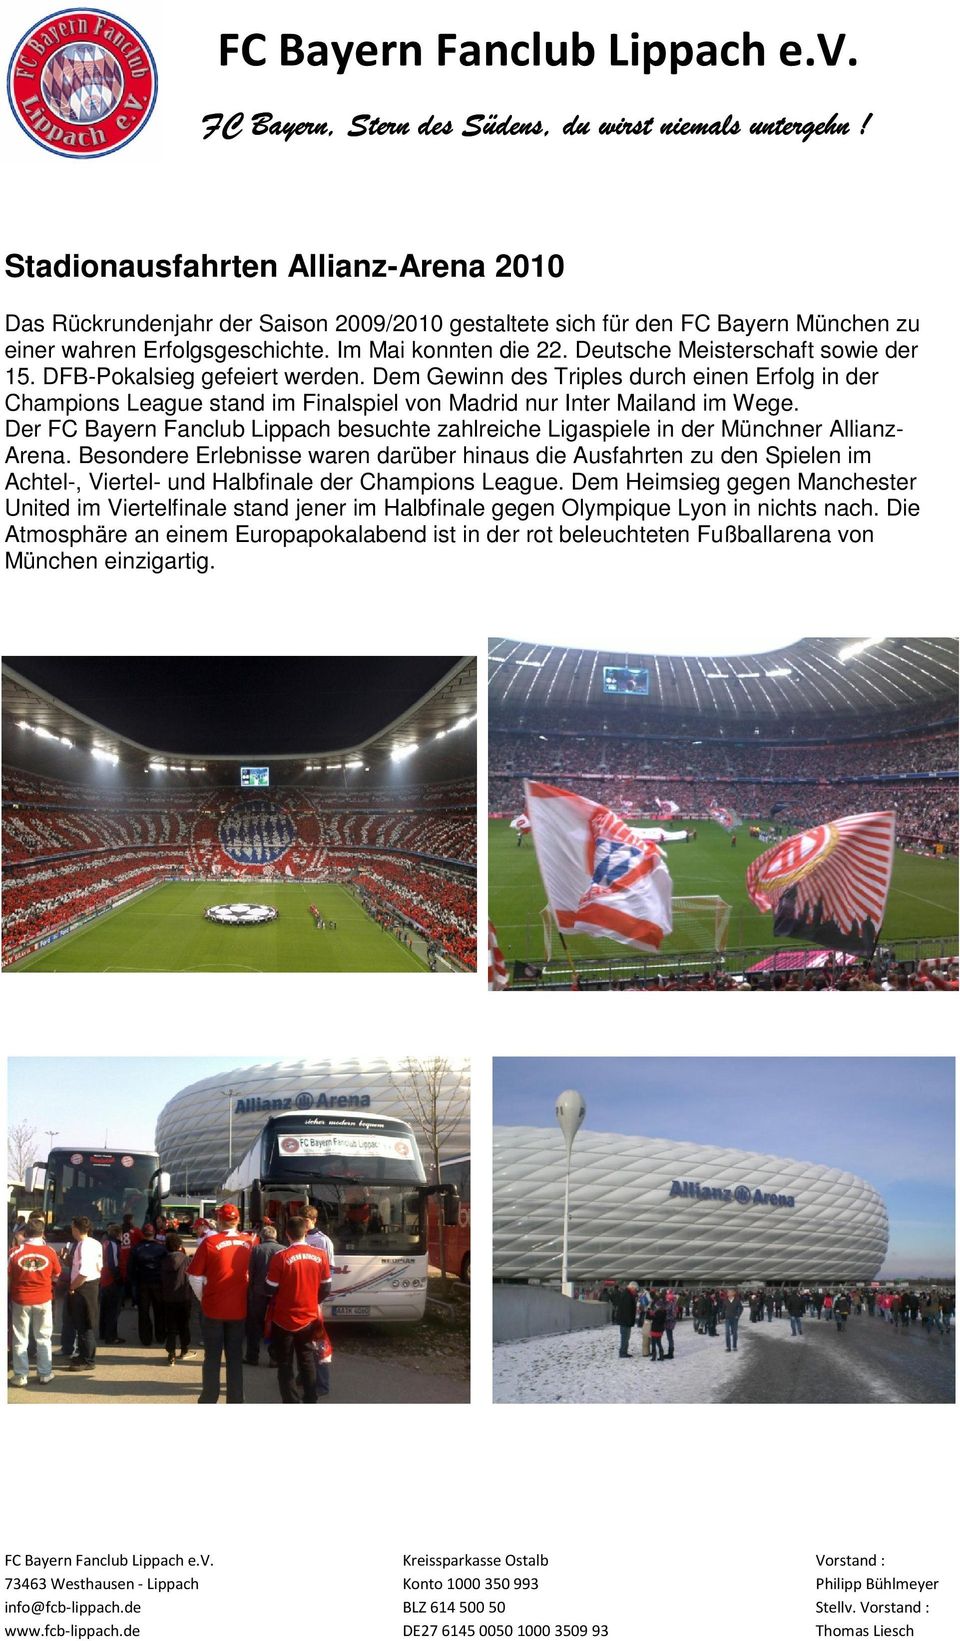 Der FC Bayern Fanclub Lippach besuchte zahlreiche Ligaspiele in der Münchner Allianz- Arena.